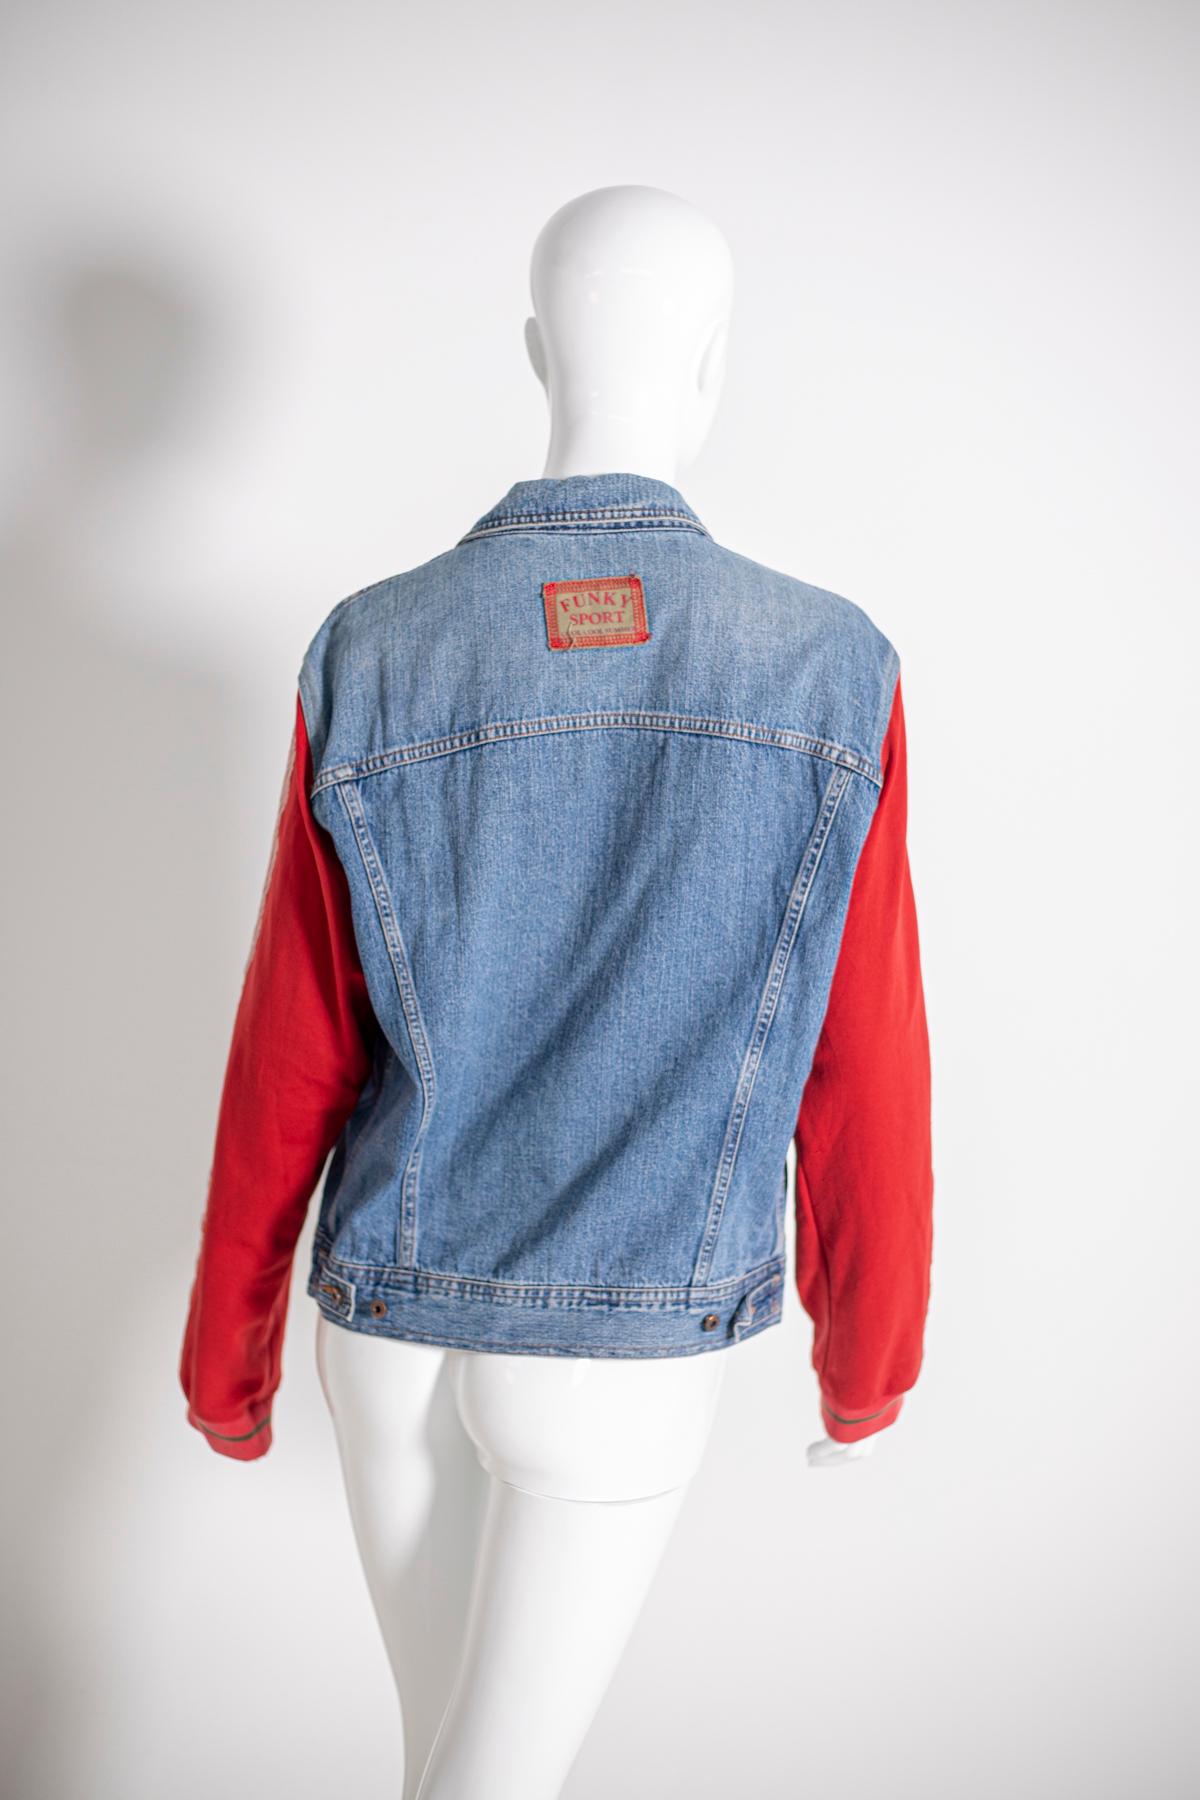 Dolce & Gabbana Vintage Jeans Jacket, Original Label For Sale 3